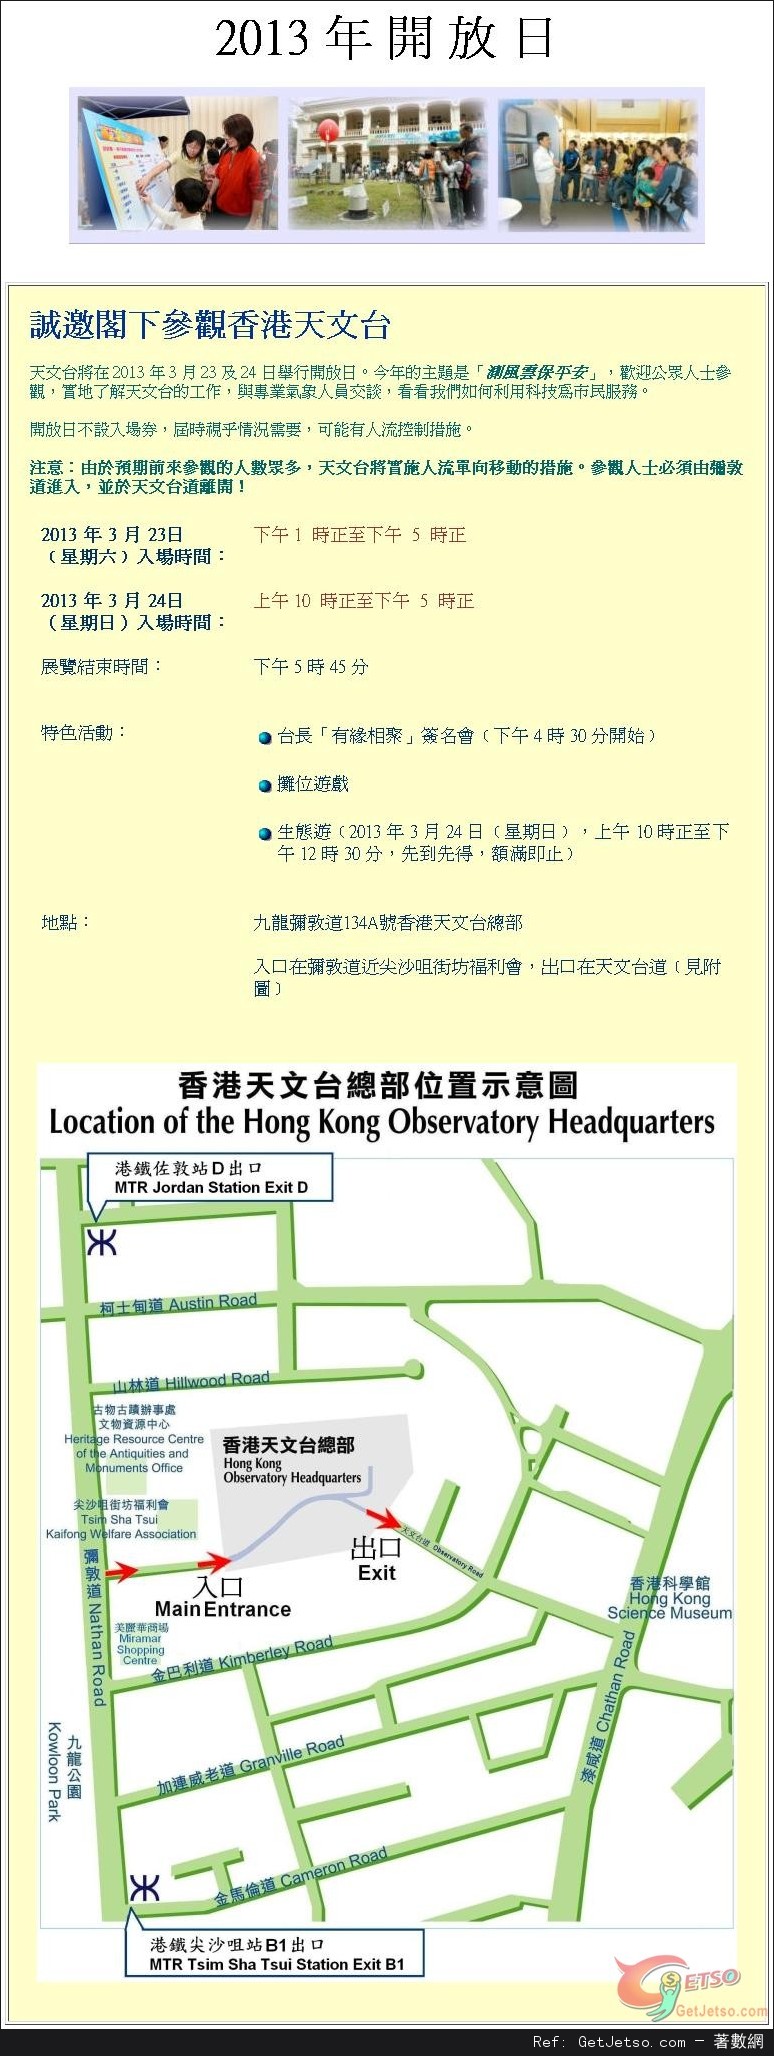 香港天文台2013年開放日(13年3月23-24日)圖片1